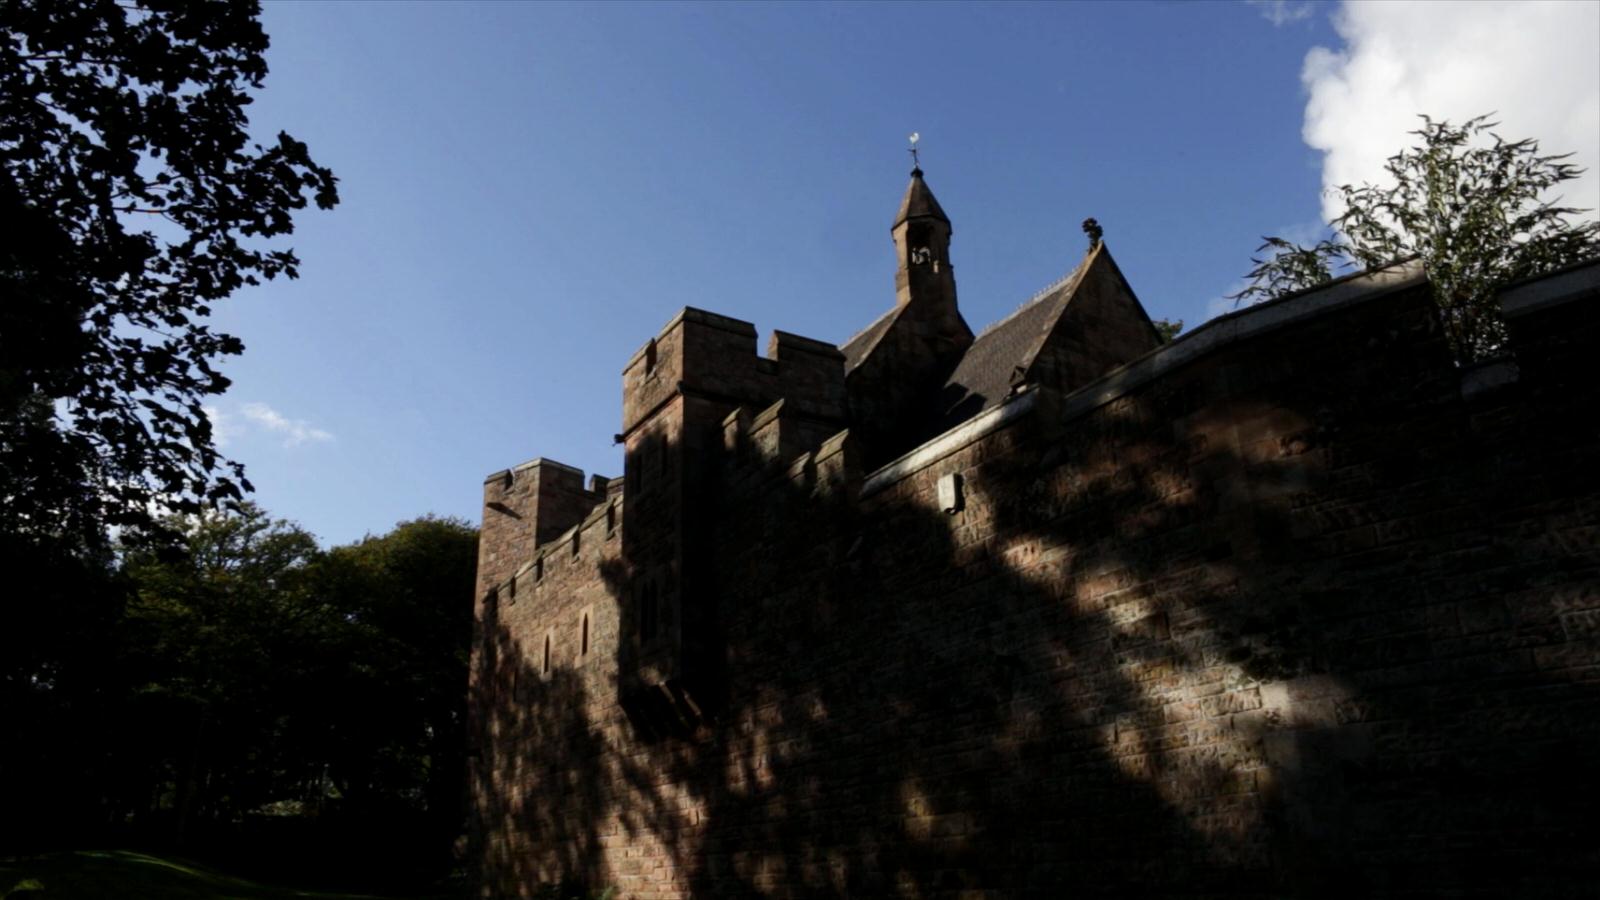 video still of peckforton castle in sunlight